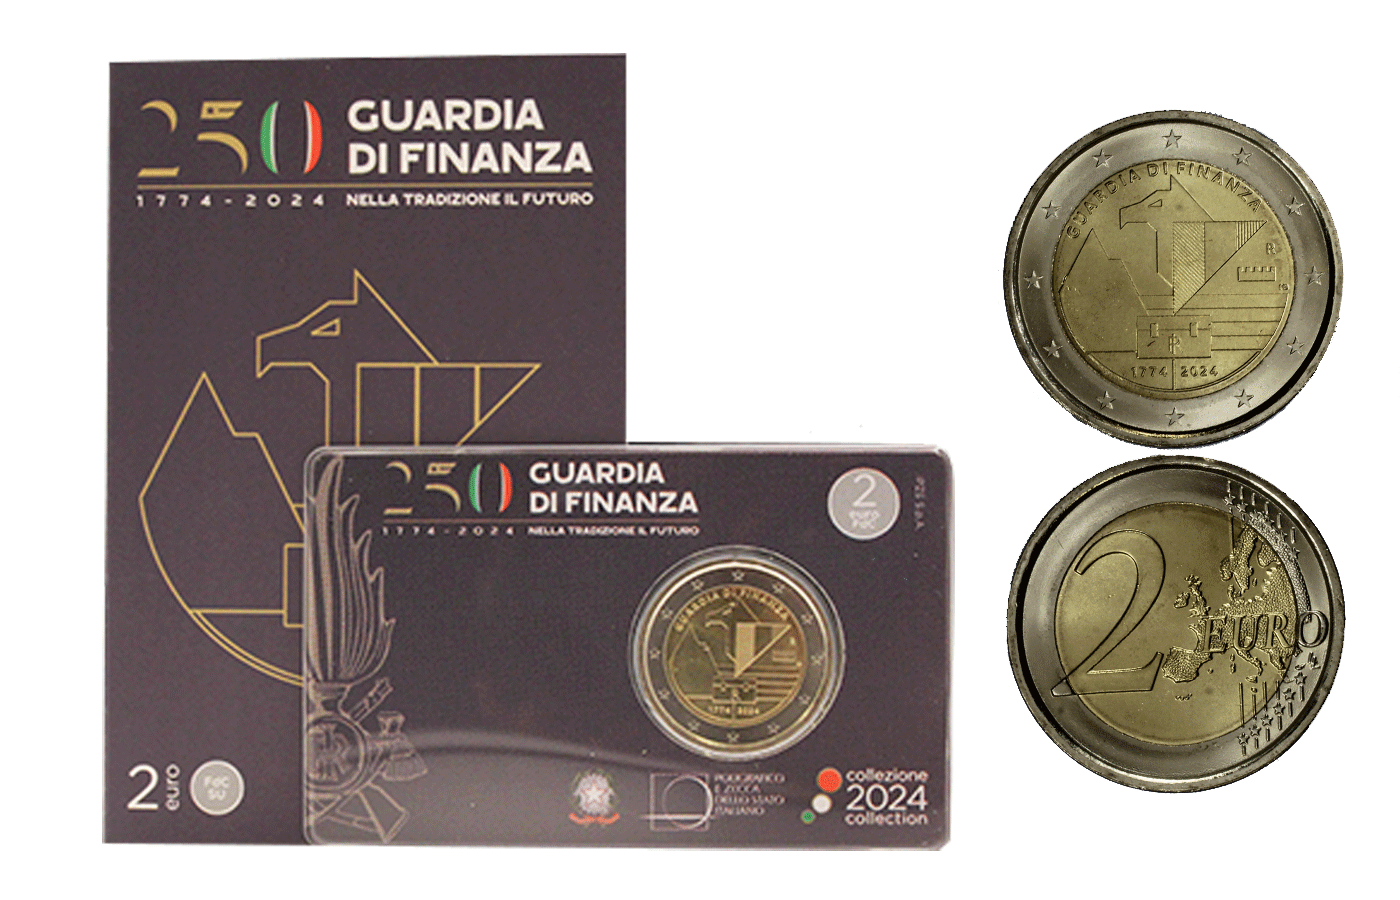 "250 Guardia di Finanza" - 2 Euro - In coincard